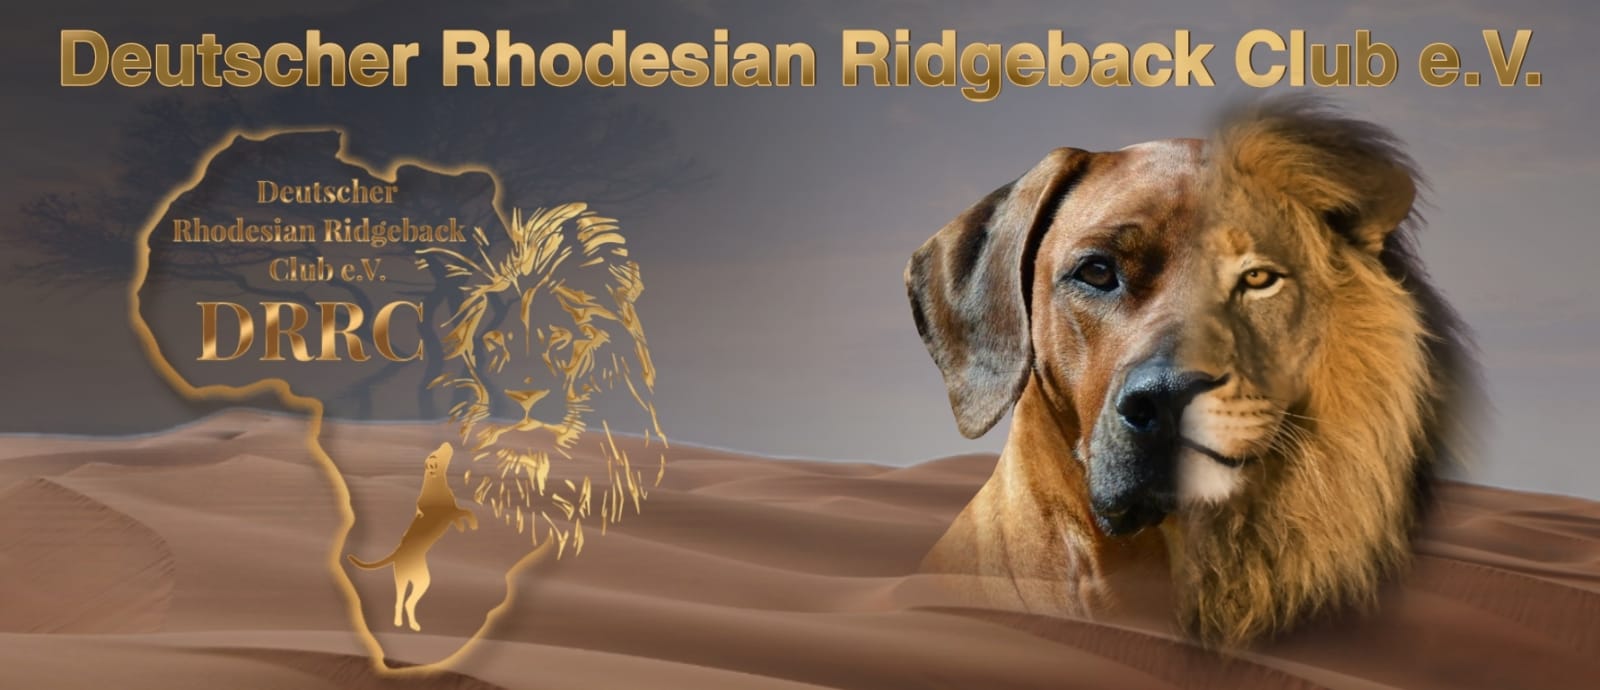 Herzlich Willkommen - Deutscher Rhodesian Ridgeback Club